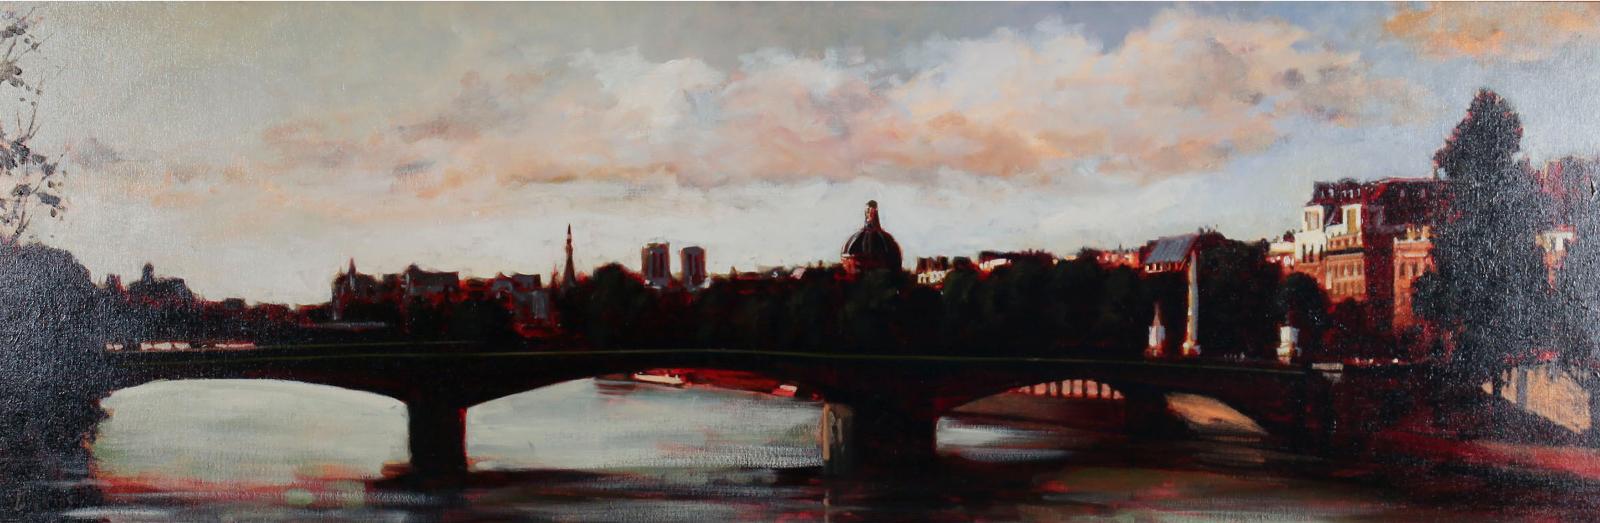 Bernard Aime Poulin (1945) - Le Pont Royal Paris, 2005